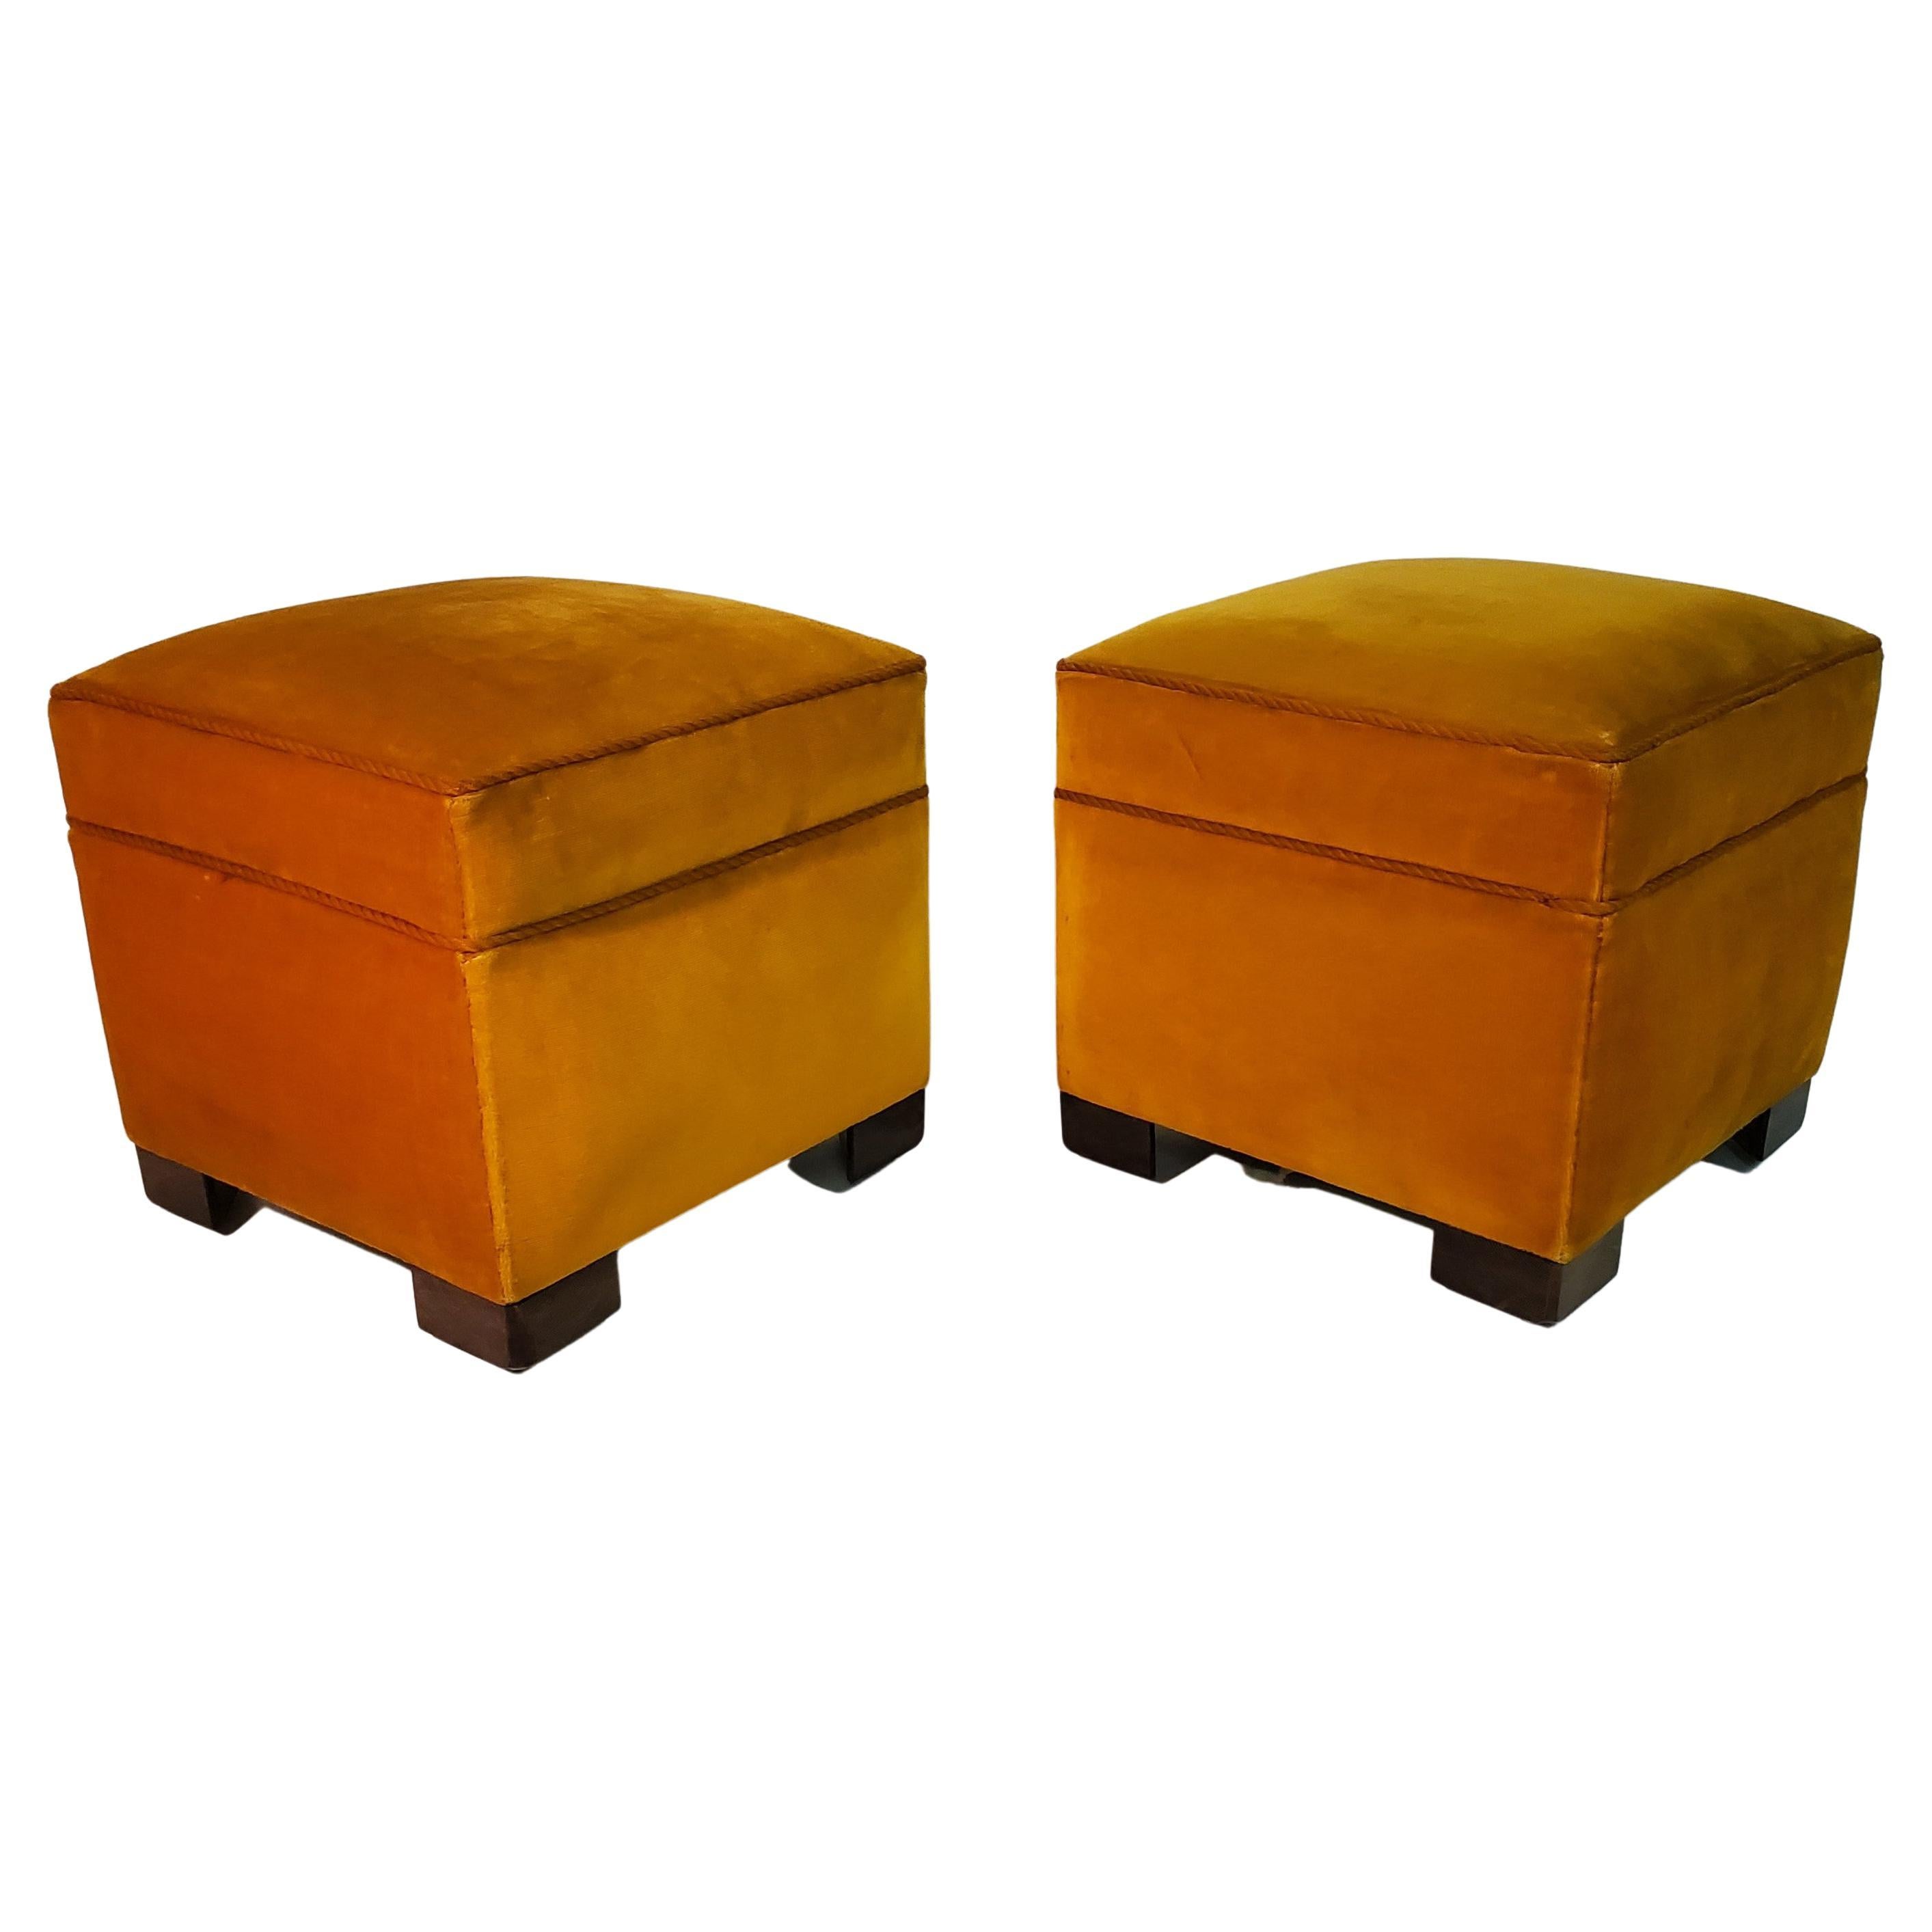 Paire de poufs carrés vintage rembourrés de couleur jaune avec des pieds en bois cubistes.
 Les poufs sont recouverts du tissu original en velours jaune vif qui ajoute une touche de couleur à l'espace. Ils ont une forme carrée, ce qui leur donne un